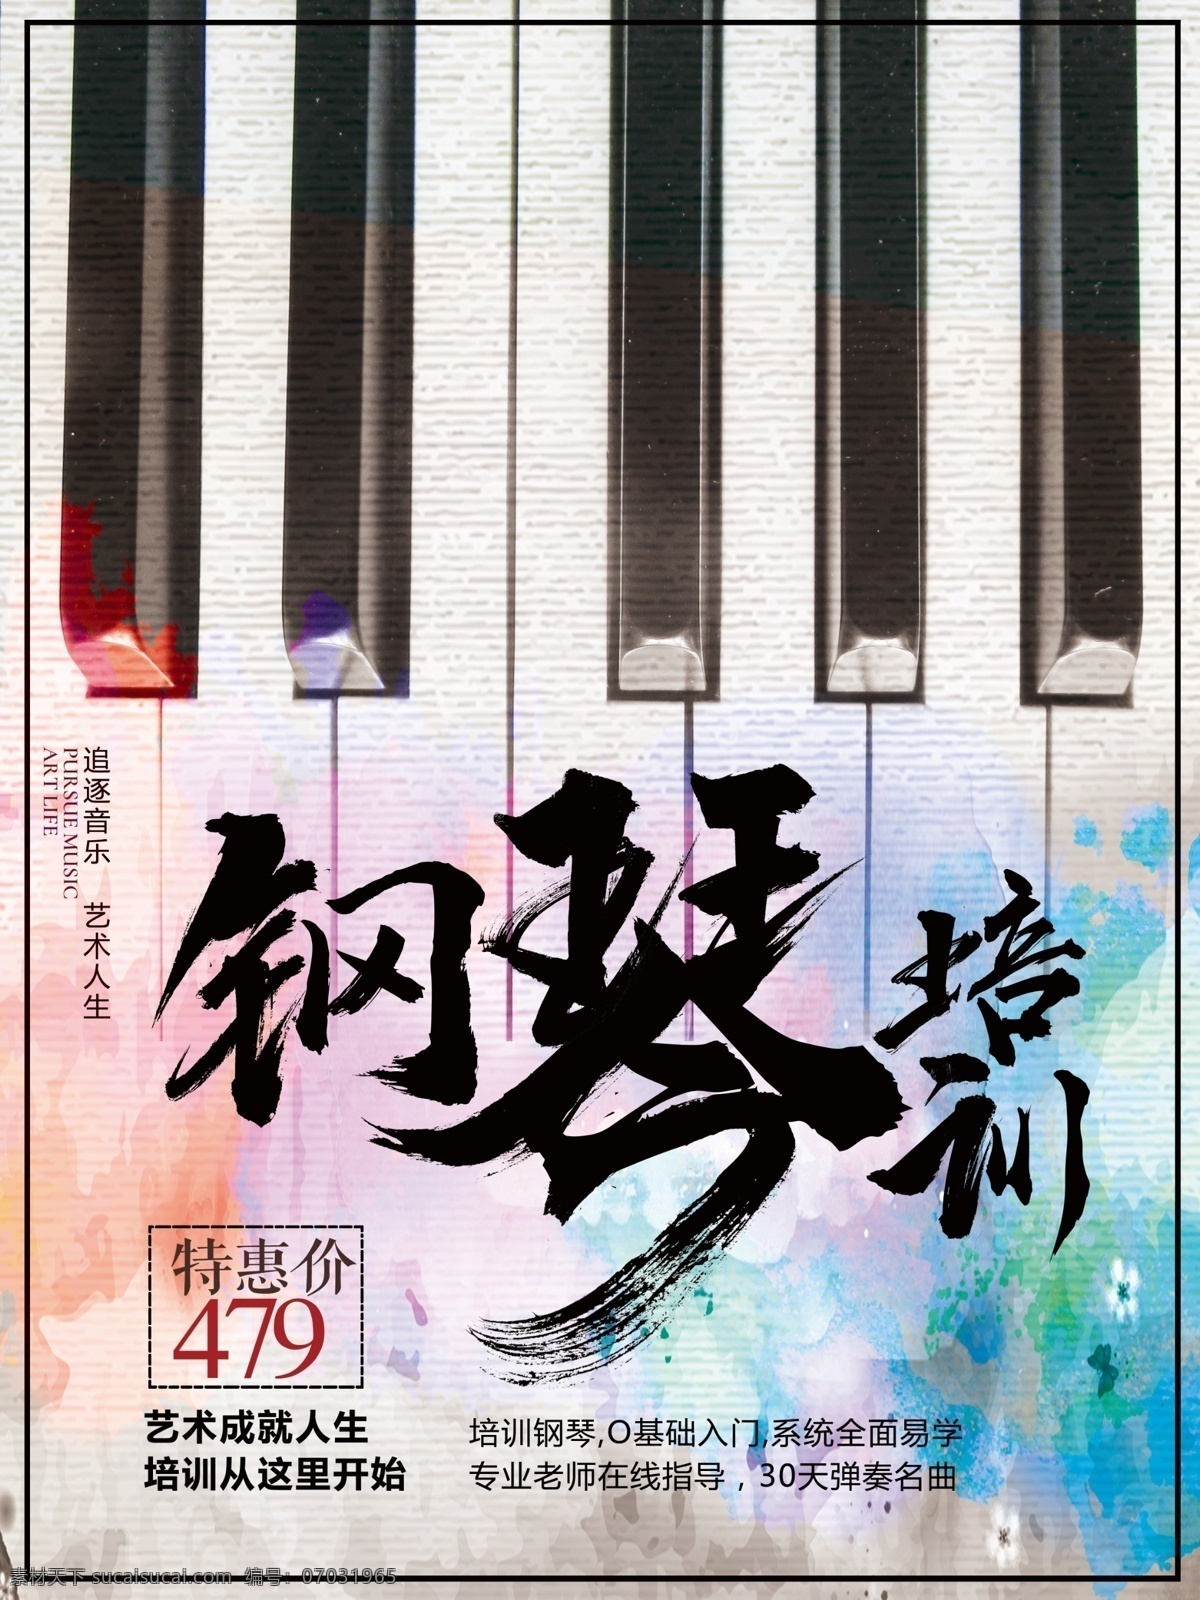 创意 钢琴 培训 招生 海报 钢琴培训 琴键 水彩